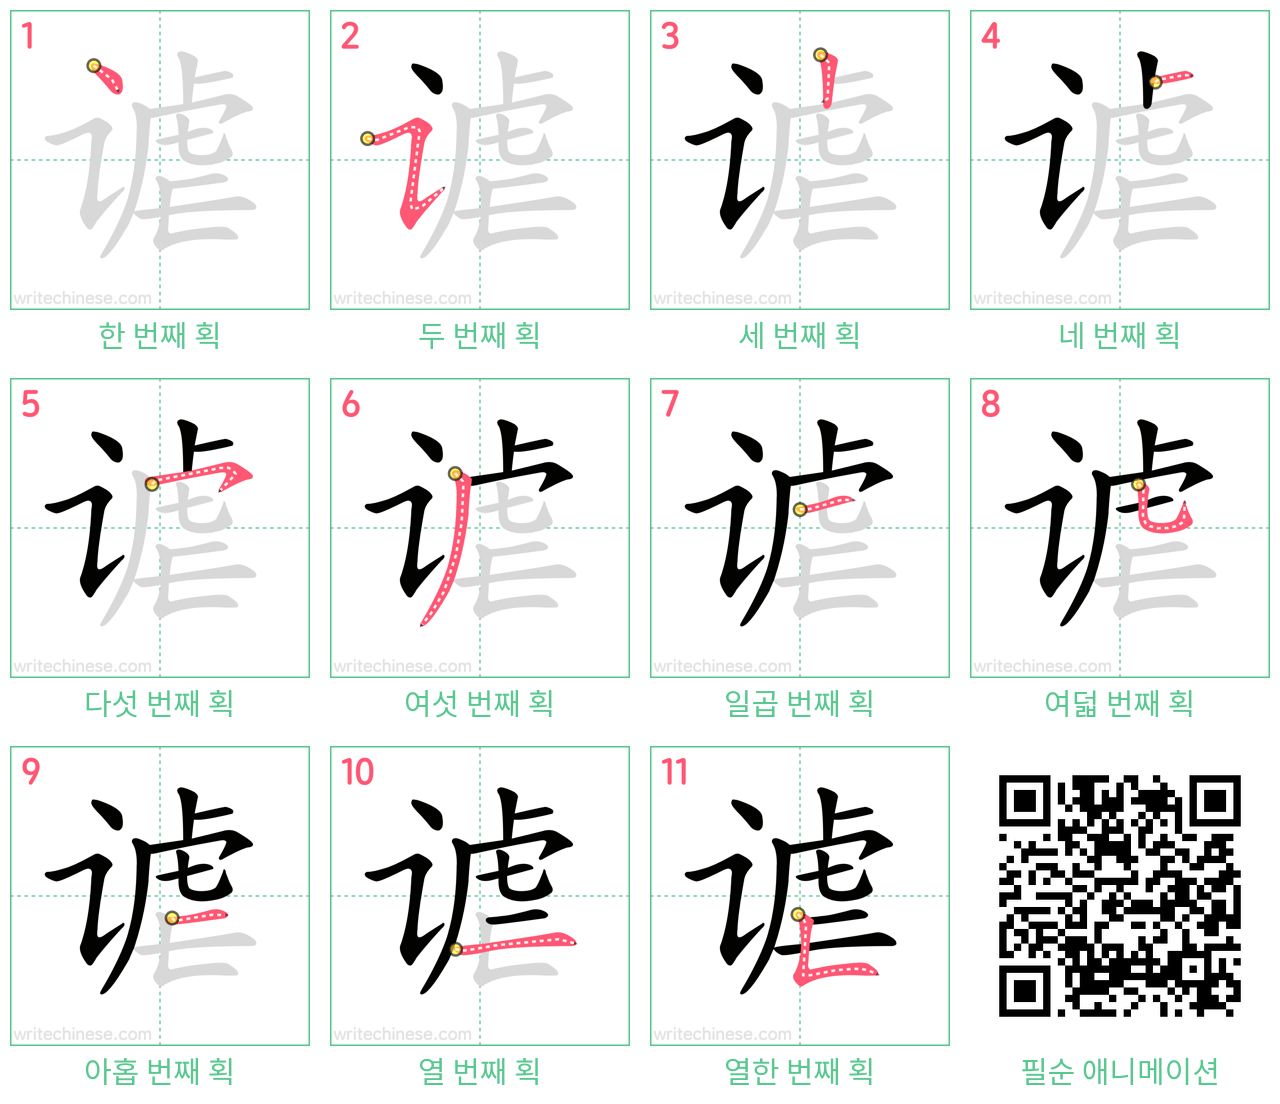 谑 step-by-step stroke order diagrams